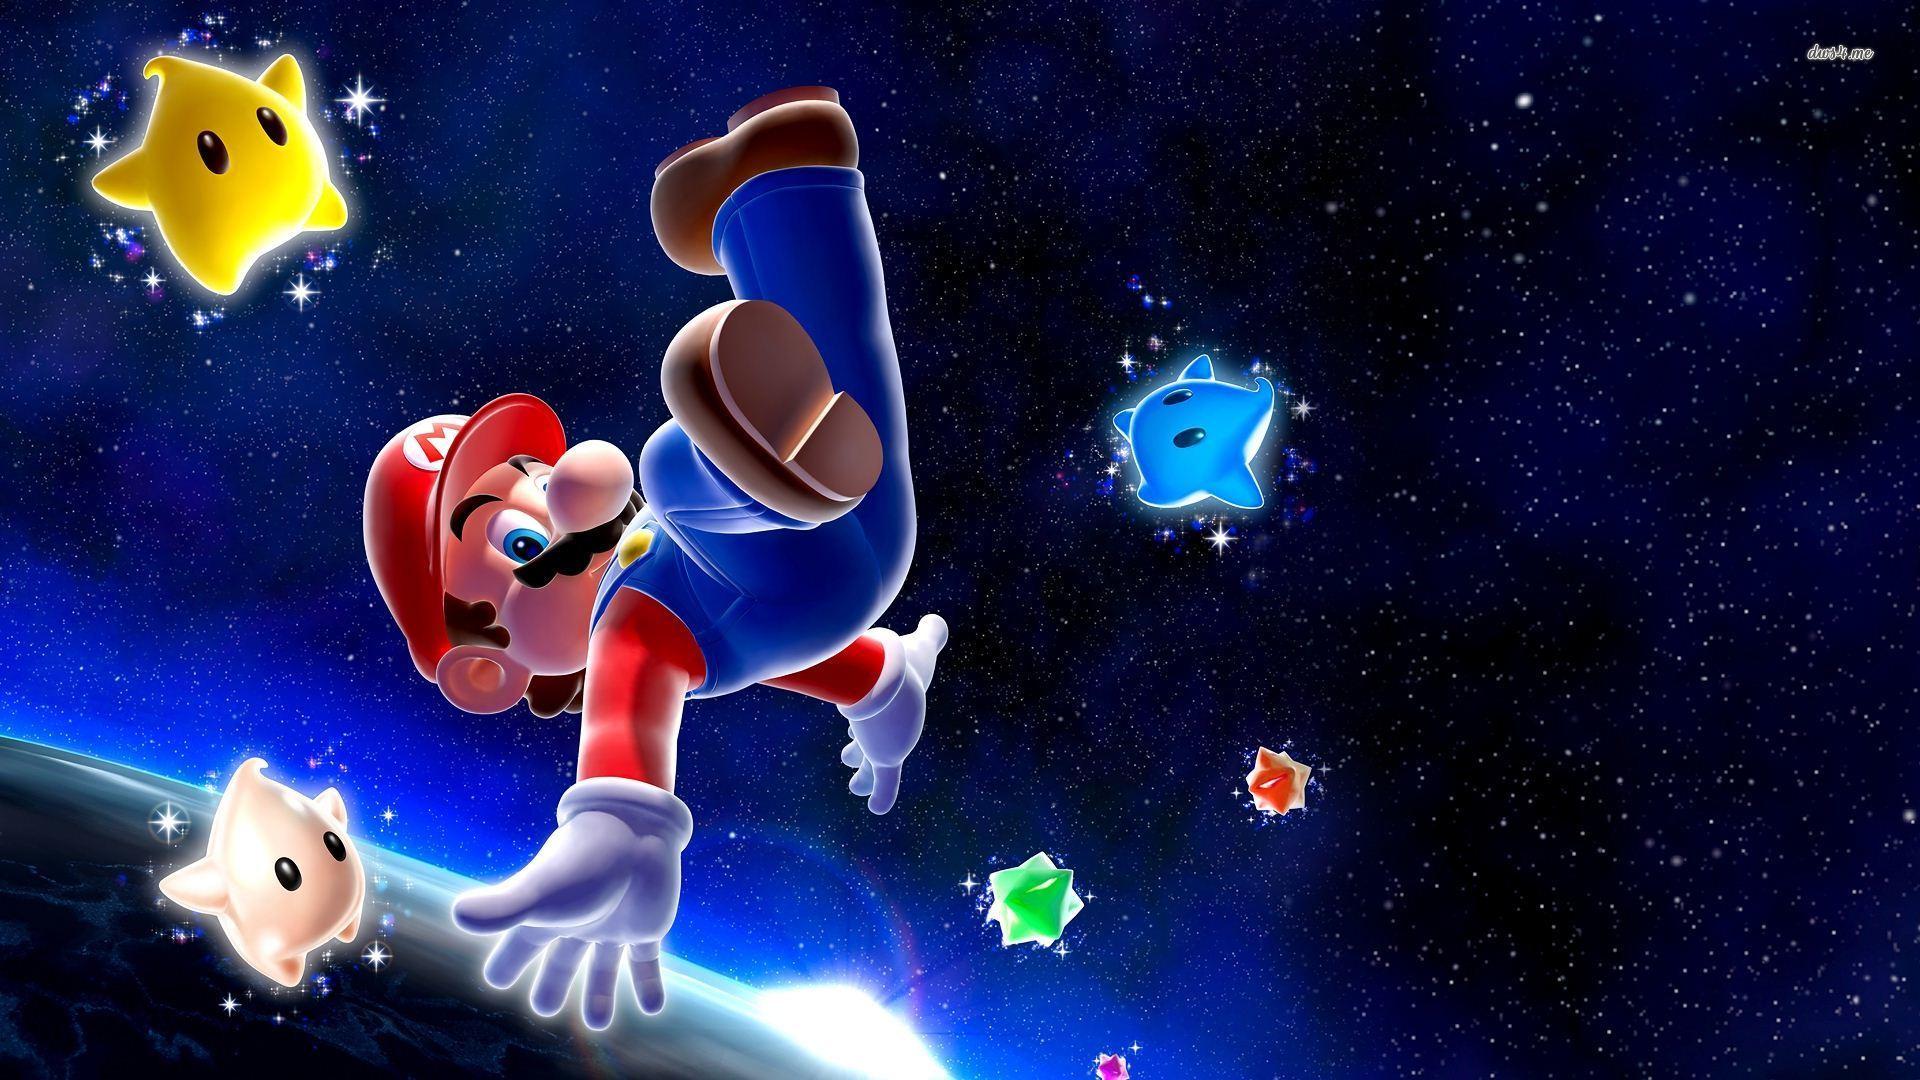 Mario Mario Galaxy wallpaper wallpaper